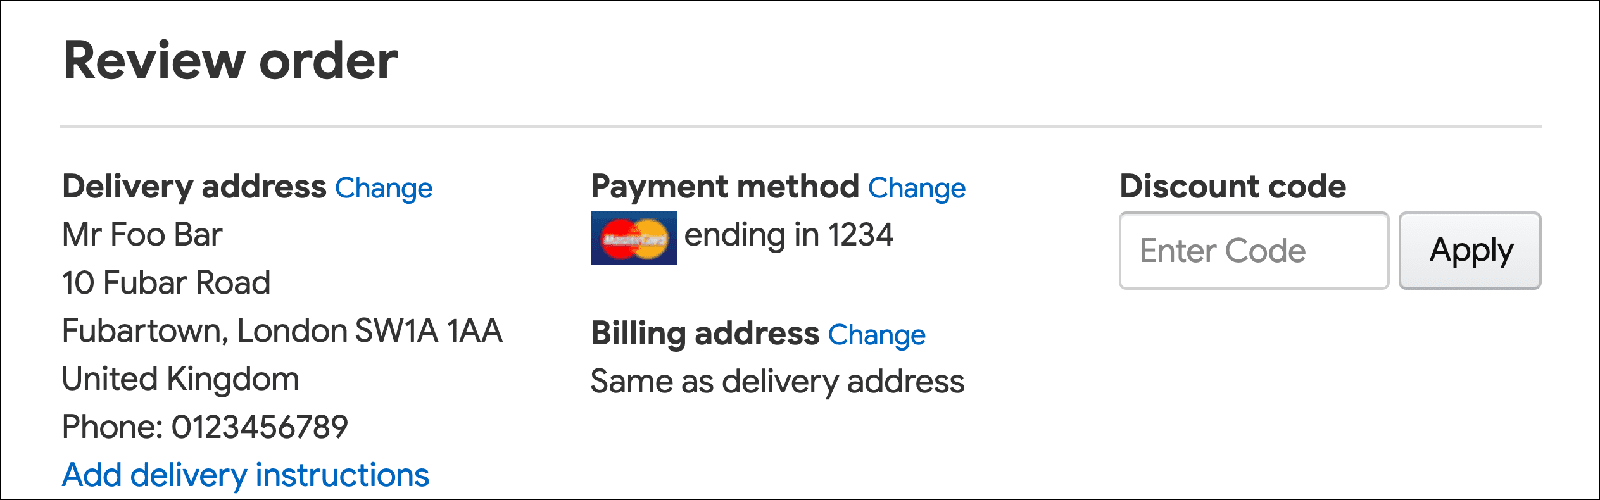 דוגמה לדף תשלום שמציג קישור לשינוי הכתובת לחיוב.